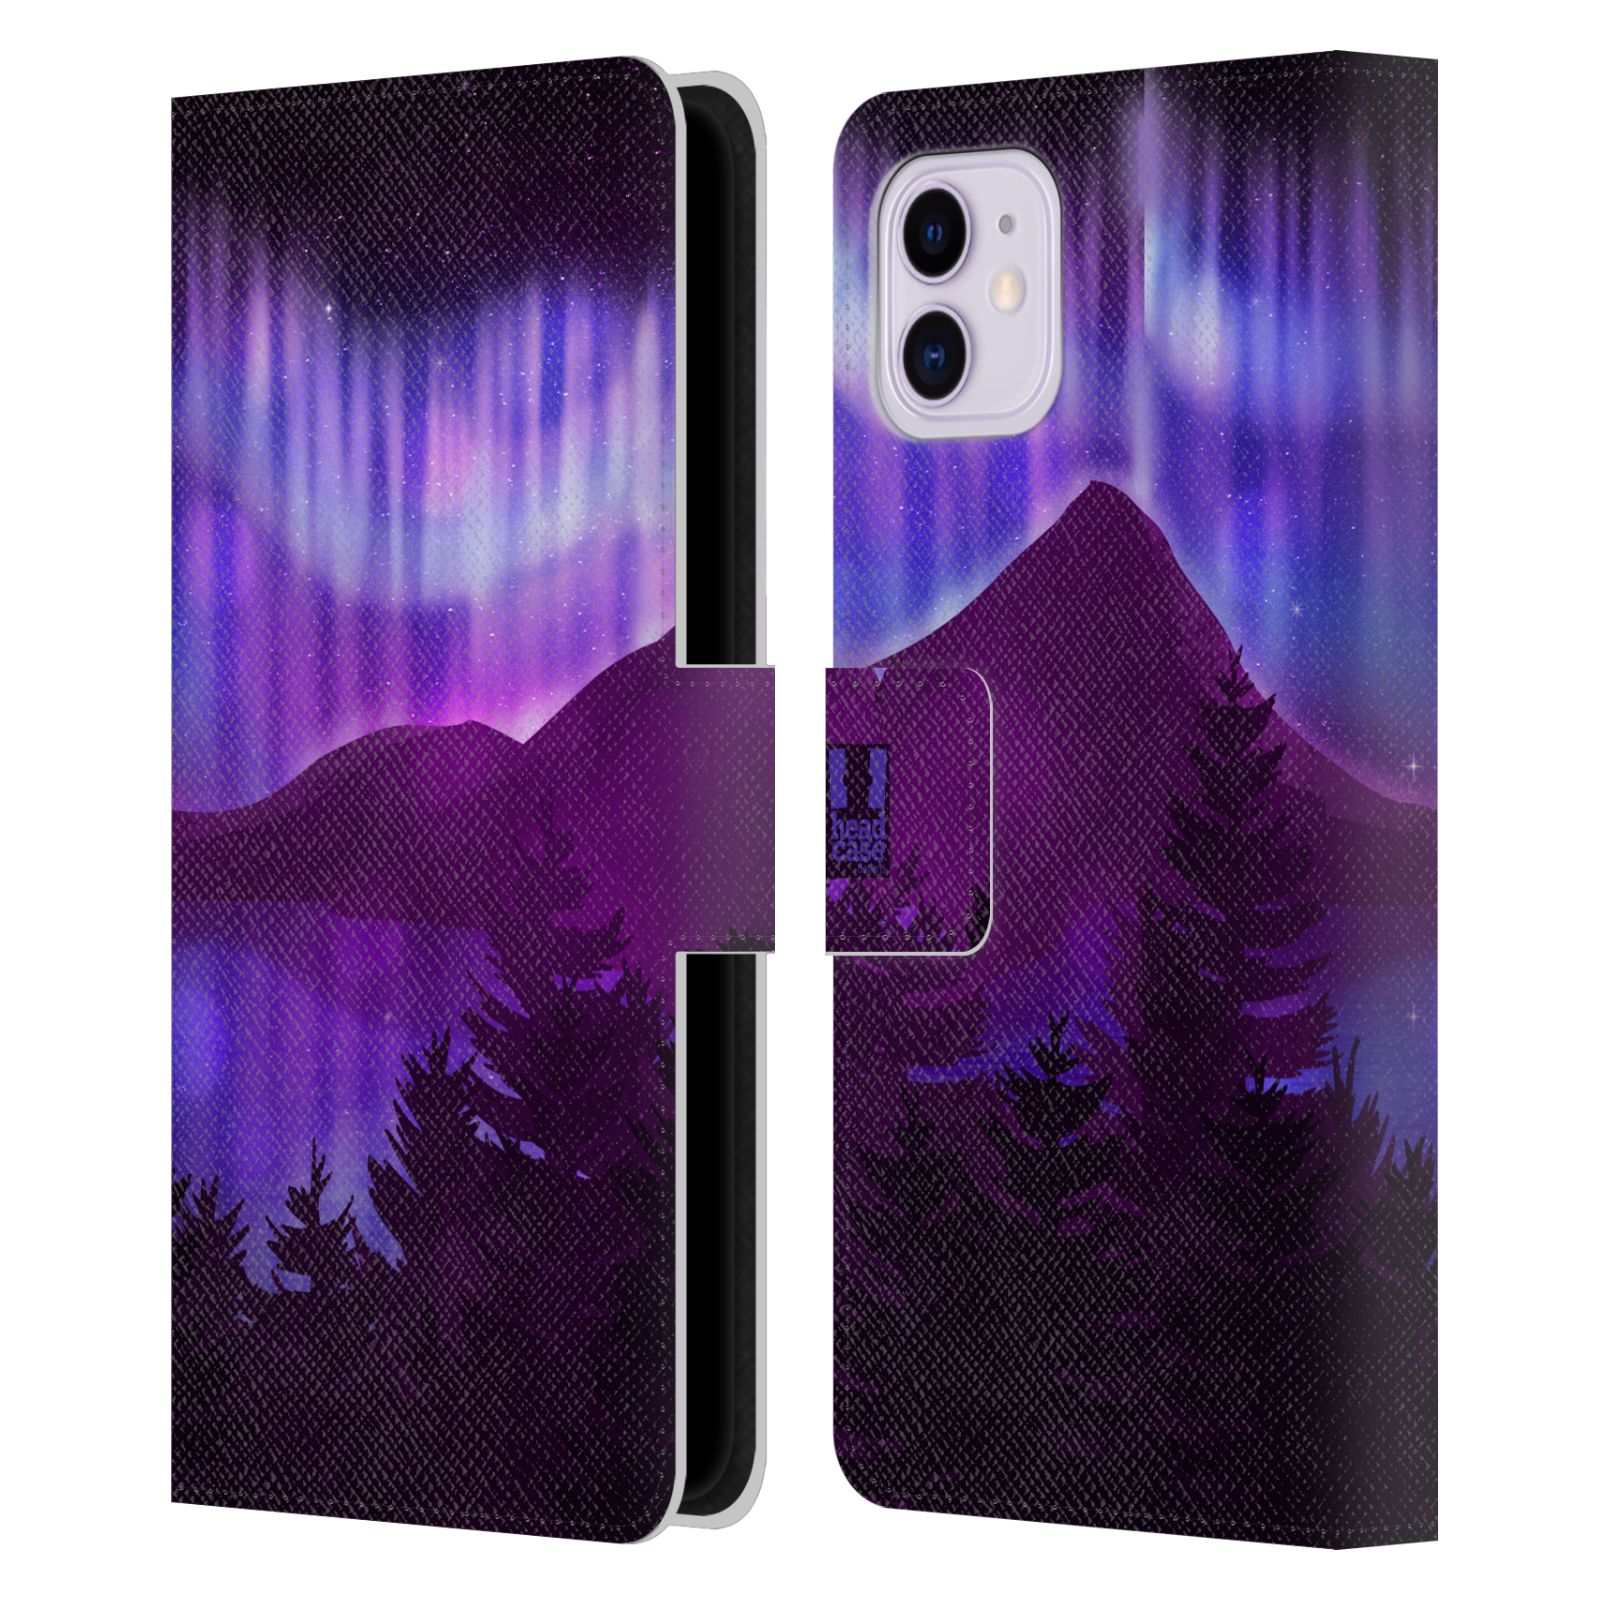 Pouzdro na mobil Apple Iphone 11 - HEAD CASE - Hory a lesy fialový odstín